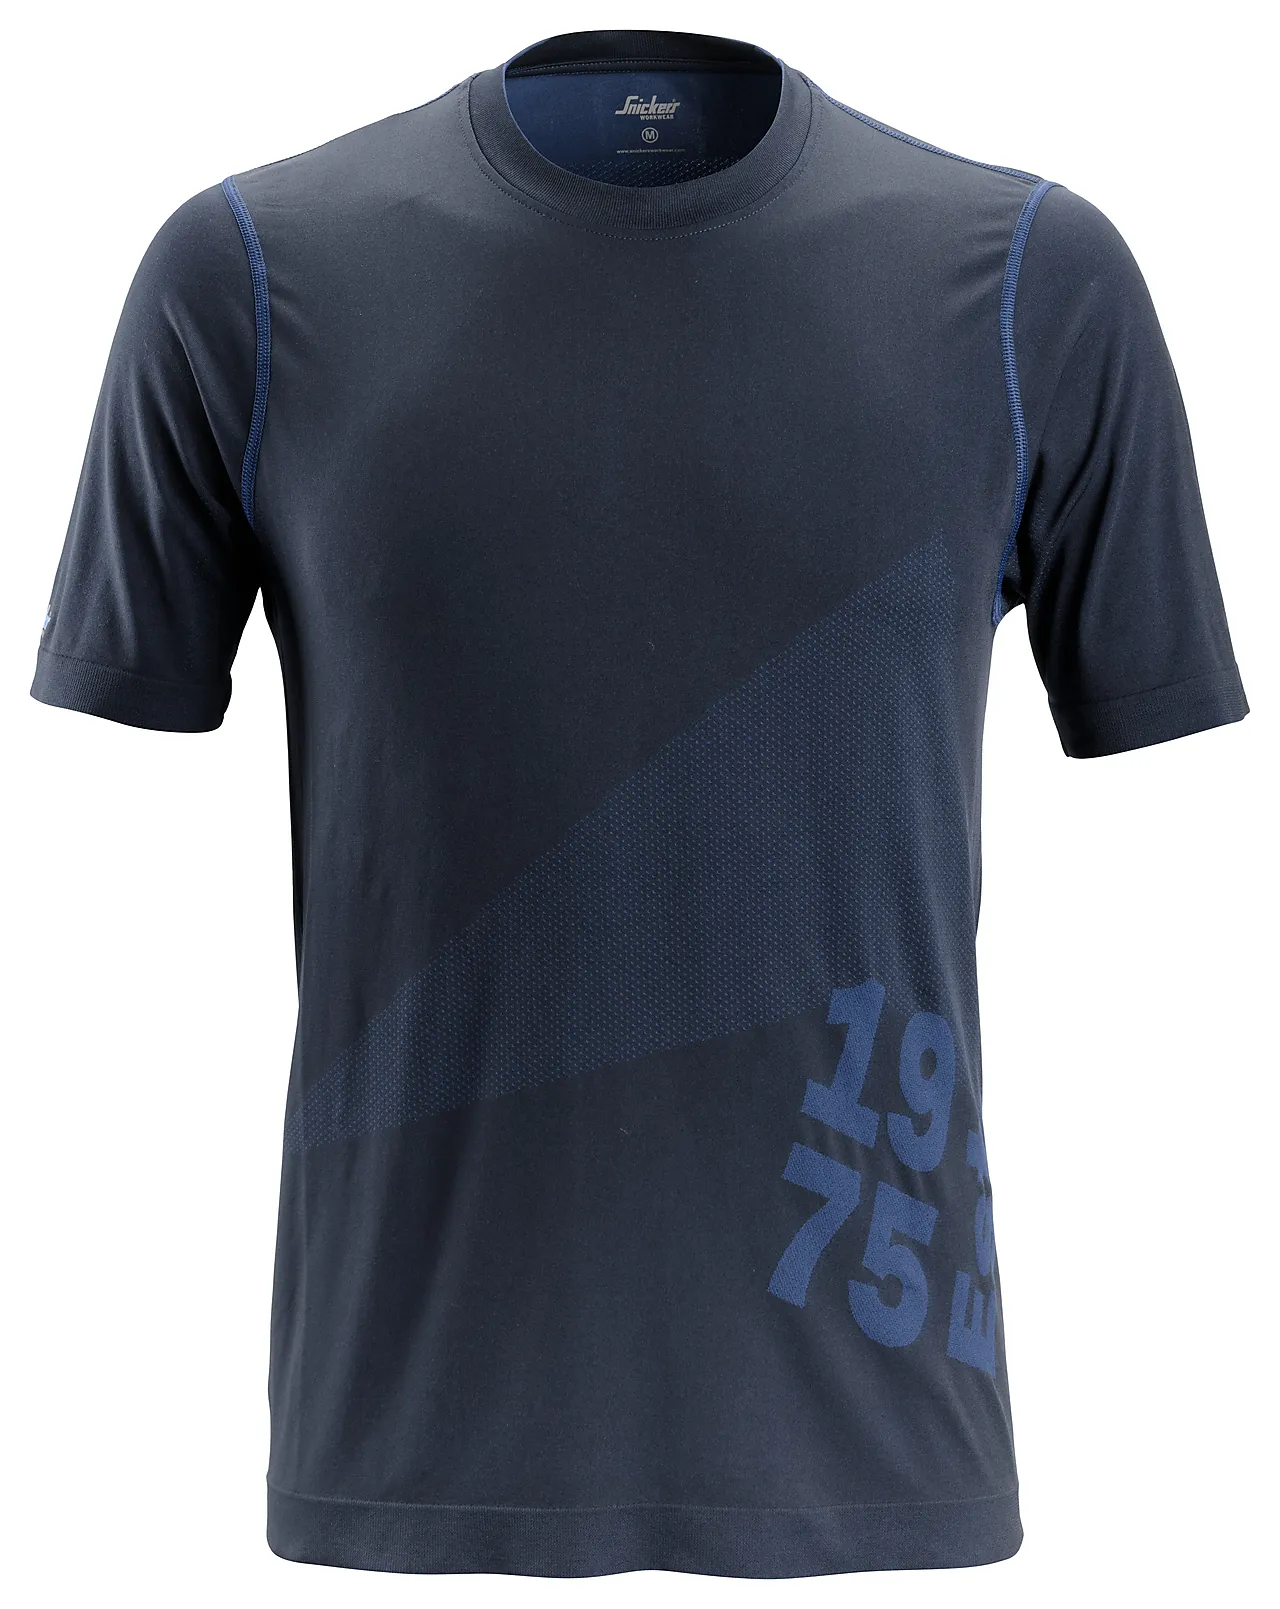 T-skjorte 2519 mørkeblå str XS Snickers 37,5 tech flexiwork